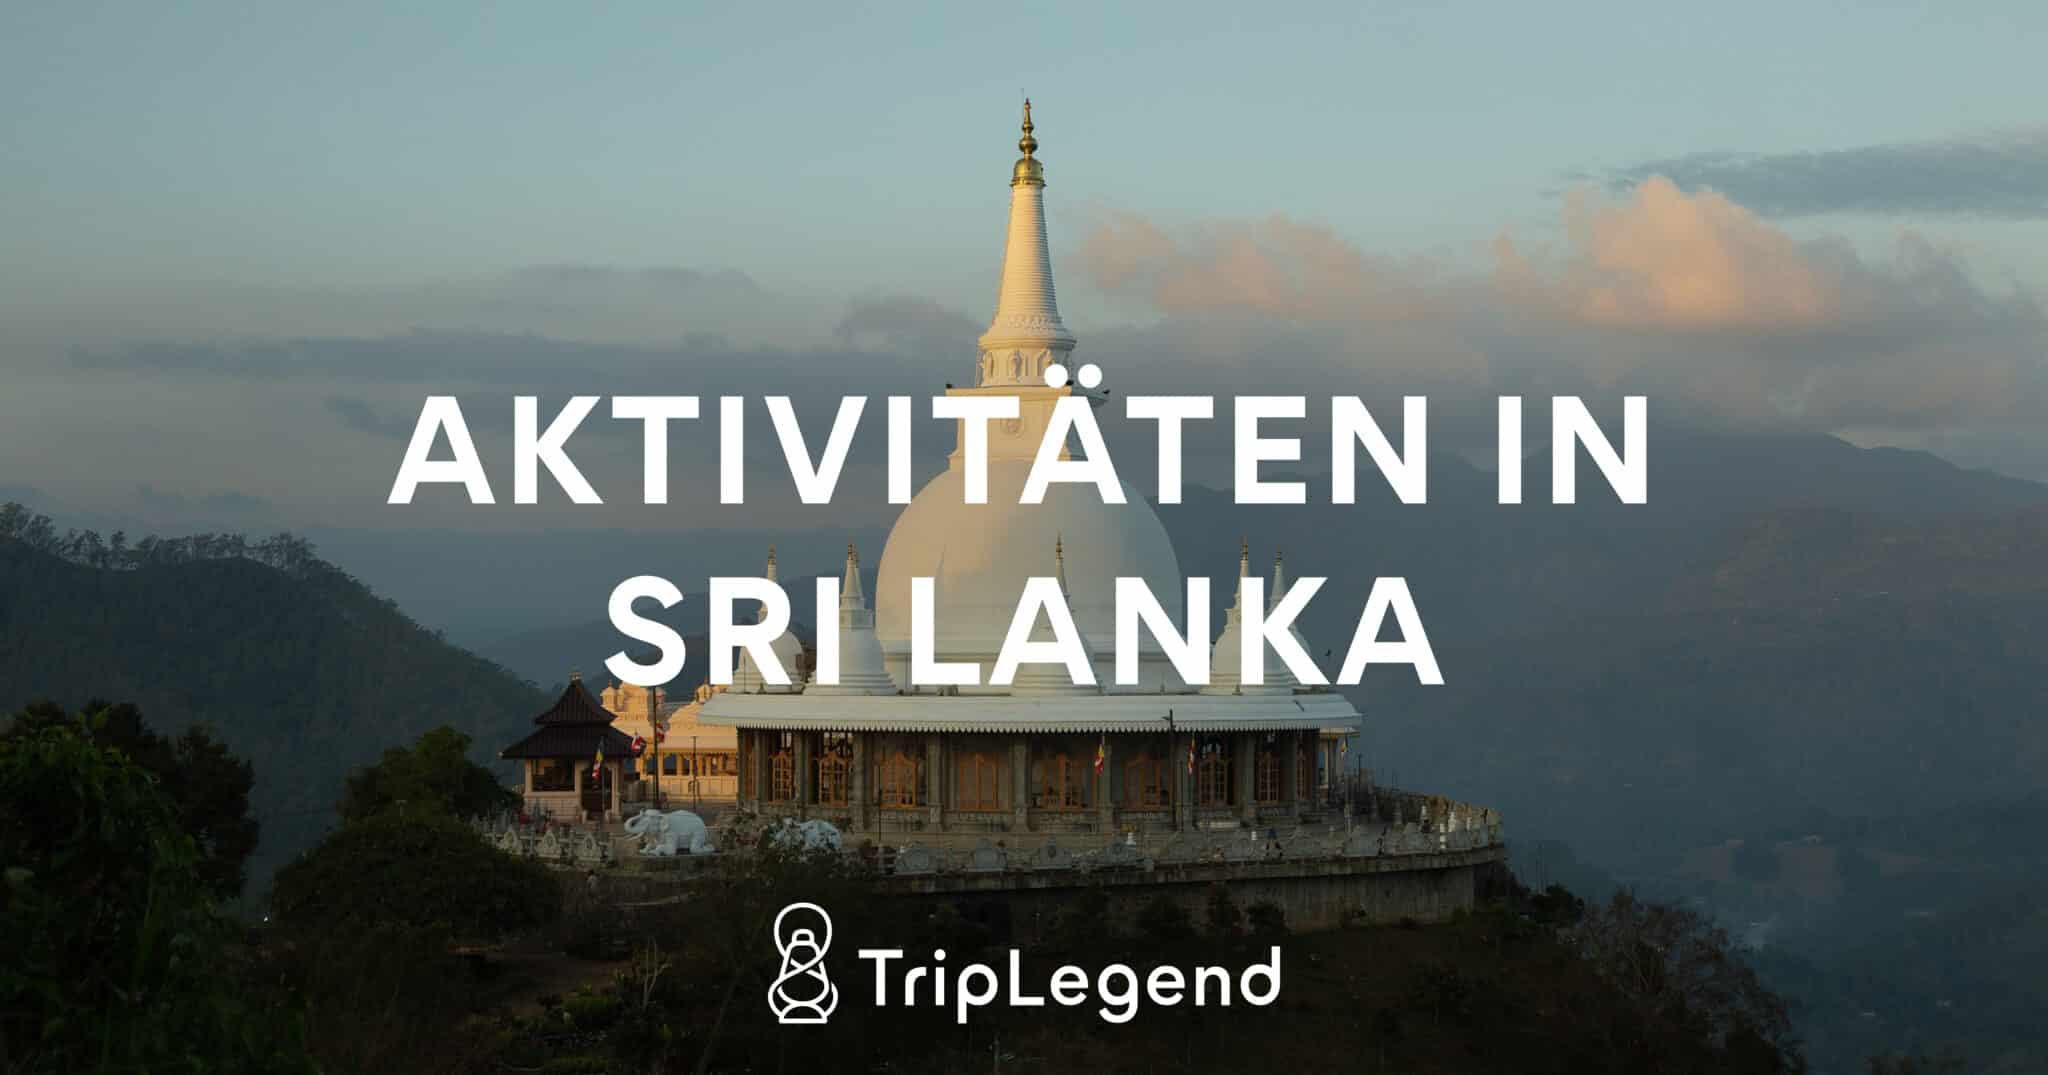 Image de contribution pour l'article sur les activités au Sri Lanka